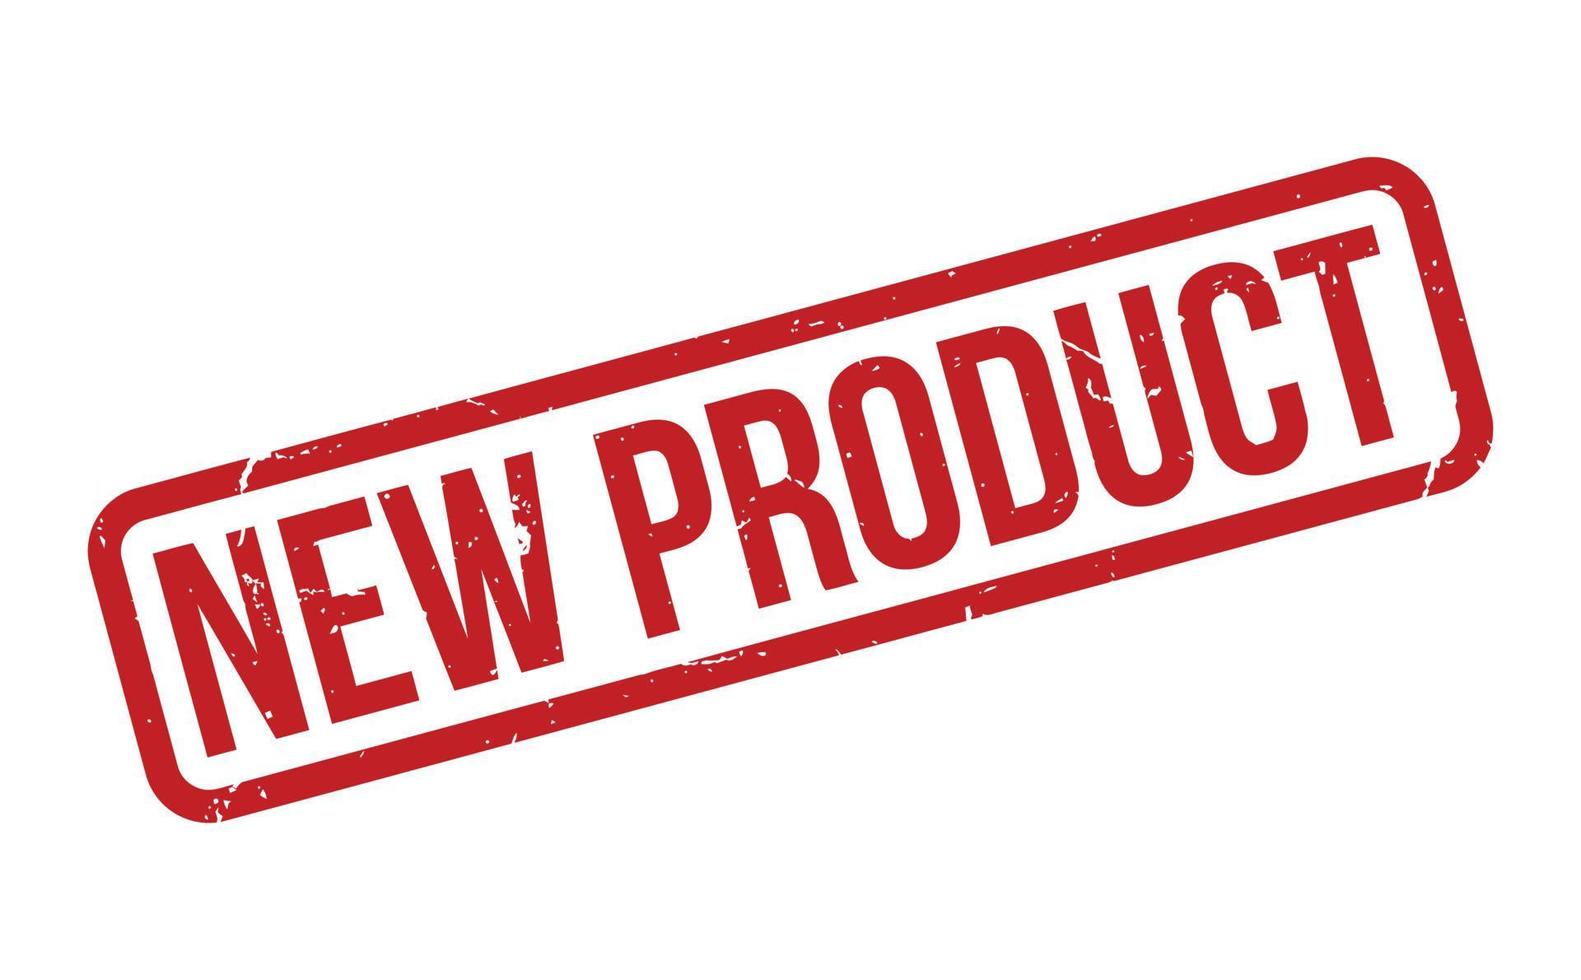 nieuw Product rubber stempel. rood nieuw Product rubber grunge postzegel zegel vector illustratie - vector